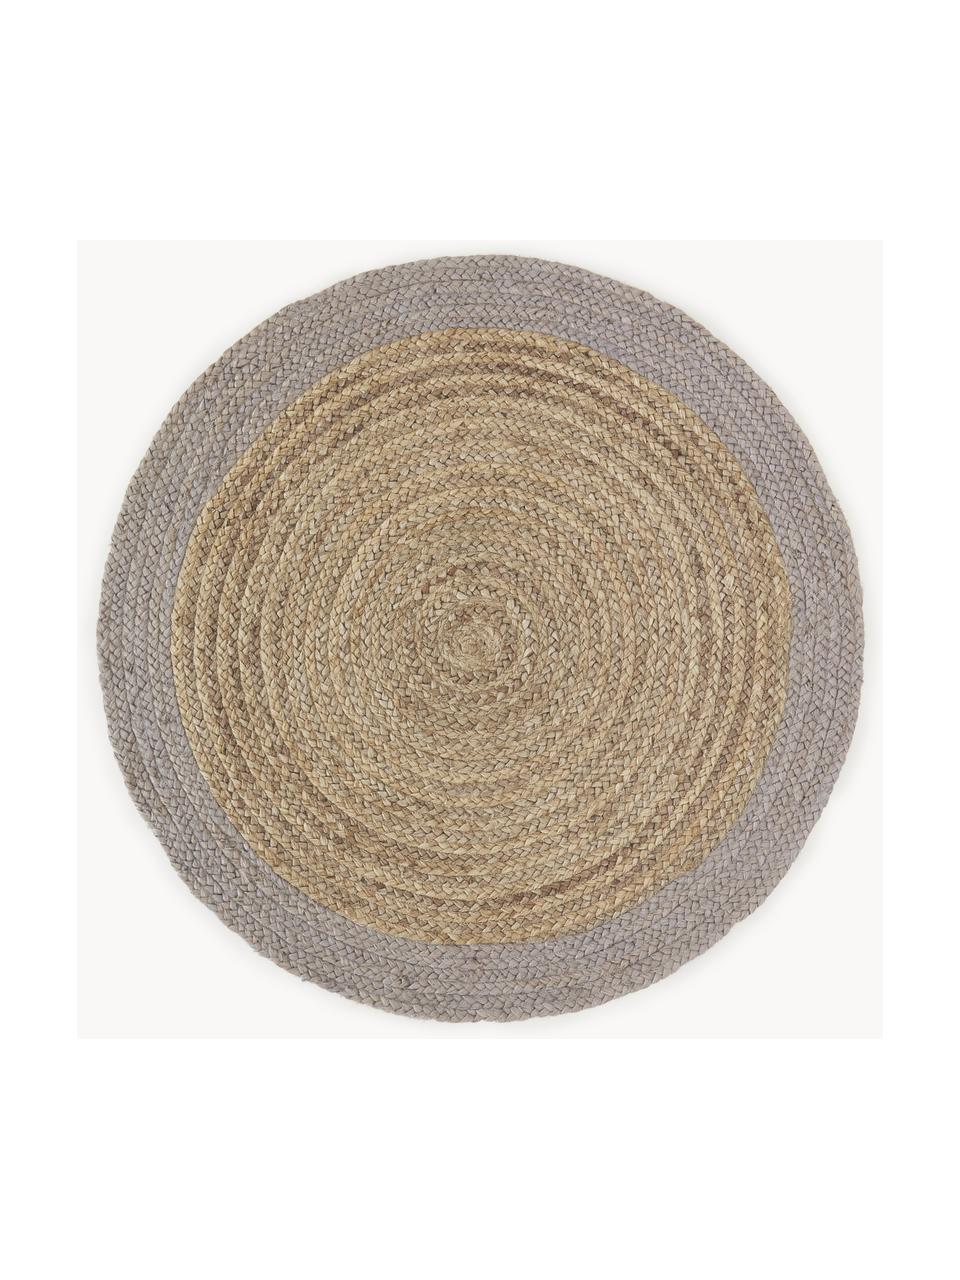 Ručně vyrobený kulatý koberec z juty Shanta, 100 % juta

Vzhledem k drsné a hrubé struktuře jutové tkaniny jsou výrobky z juty méně vhodné pro přímý kontakt s pokožkou., Béžová, šedá, Ø 140 cm